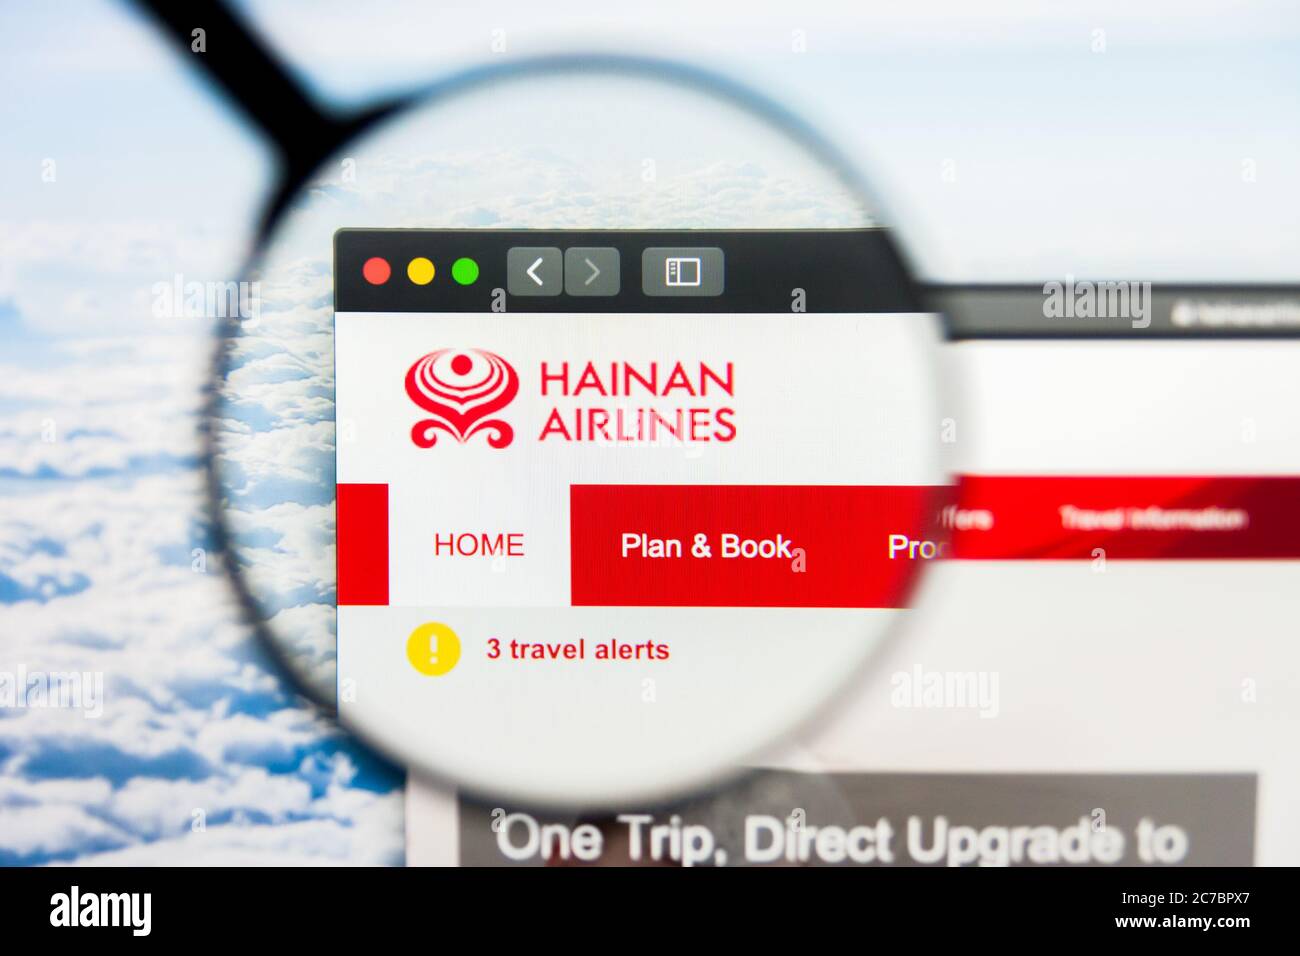 Los Angeles, Californie, Etats-Unis - 21 mars 2019 : éditorial illustratif de la page d'accueil du site de Hainan Airlines. Logo Hainan Airlines visible sur l'écran Banque D'Images